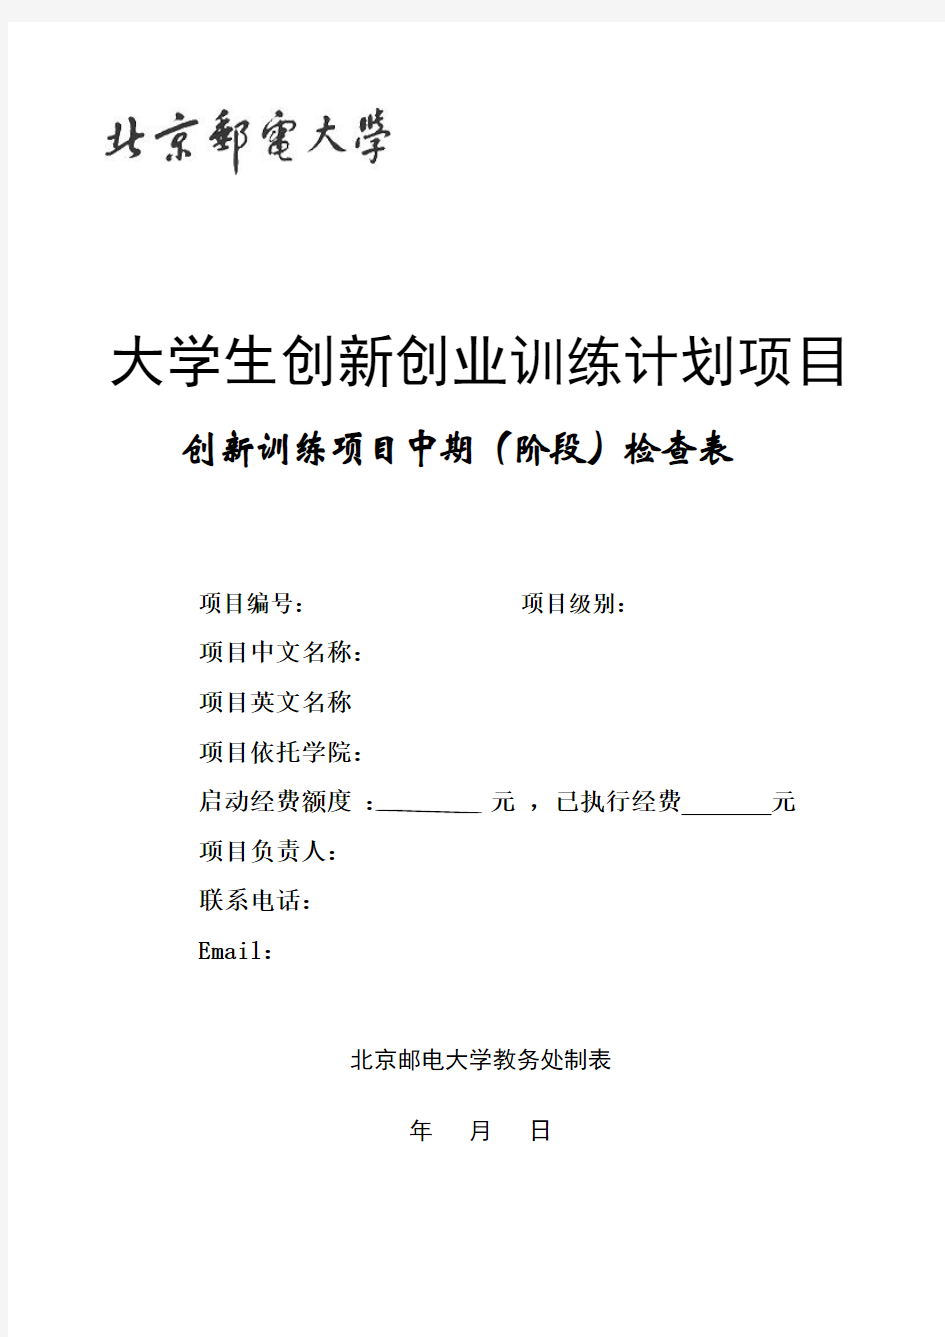 北京邮电大学大学生创新训练项目中期(阶段)检查表_